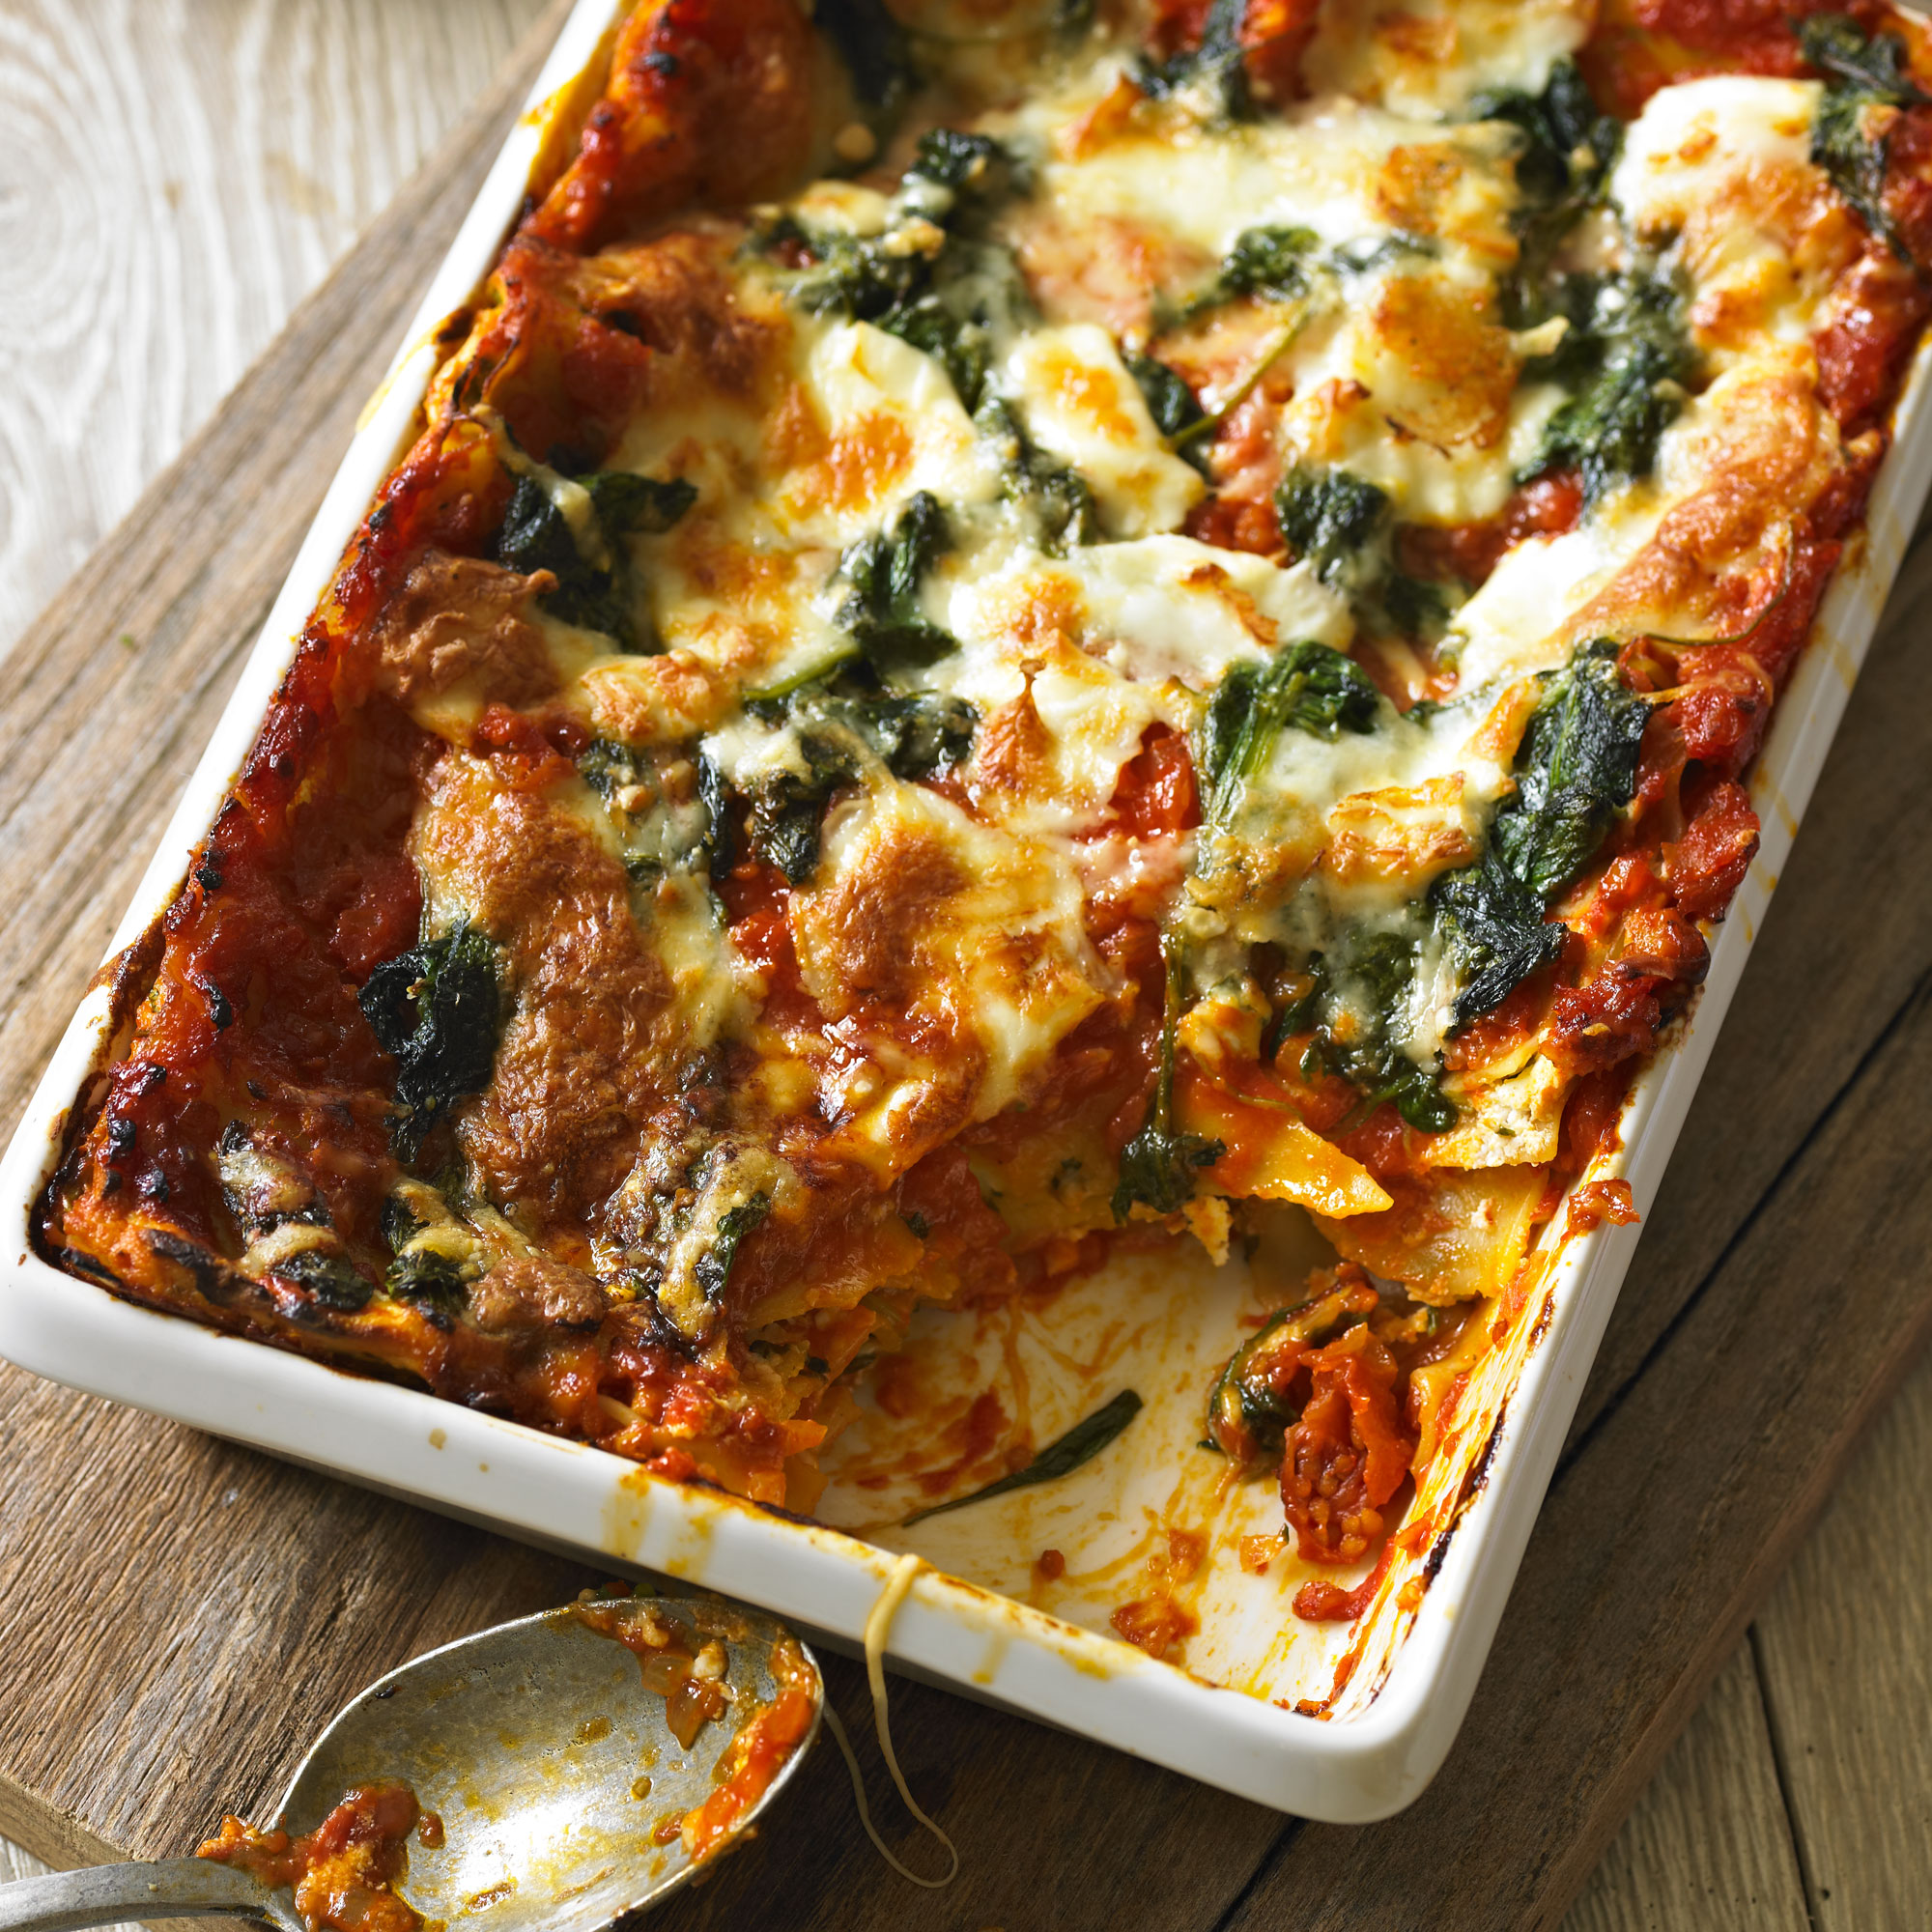 Recipes for zucchini lasagna